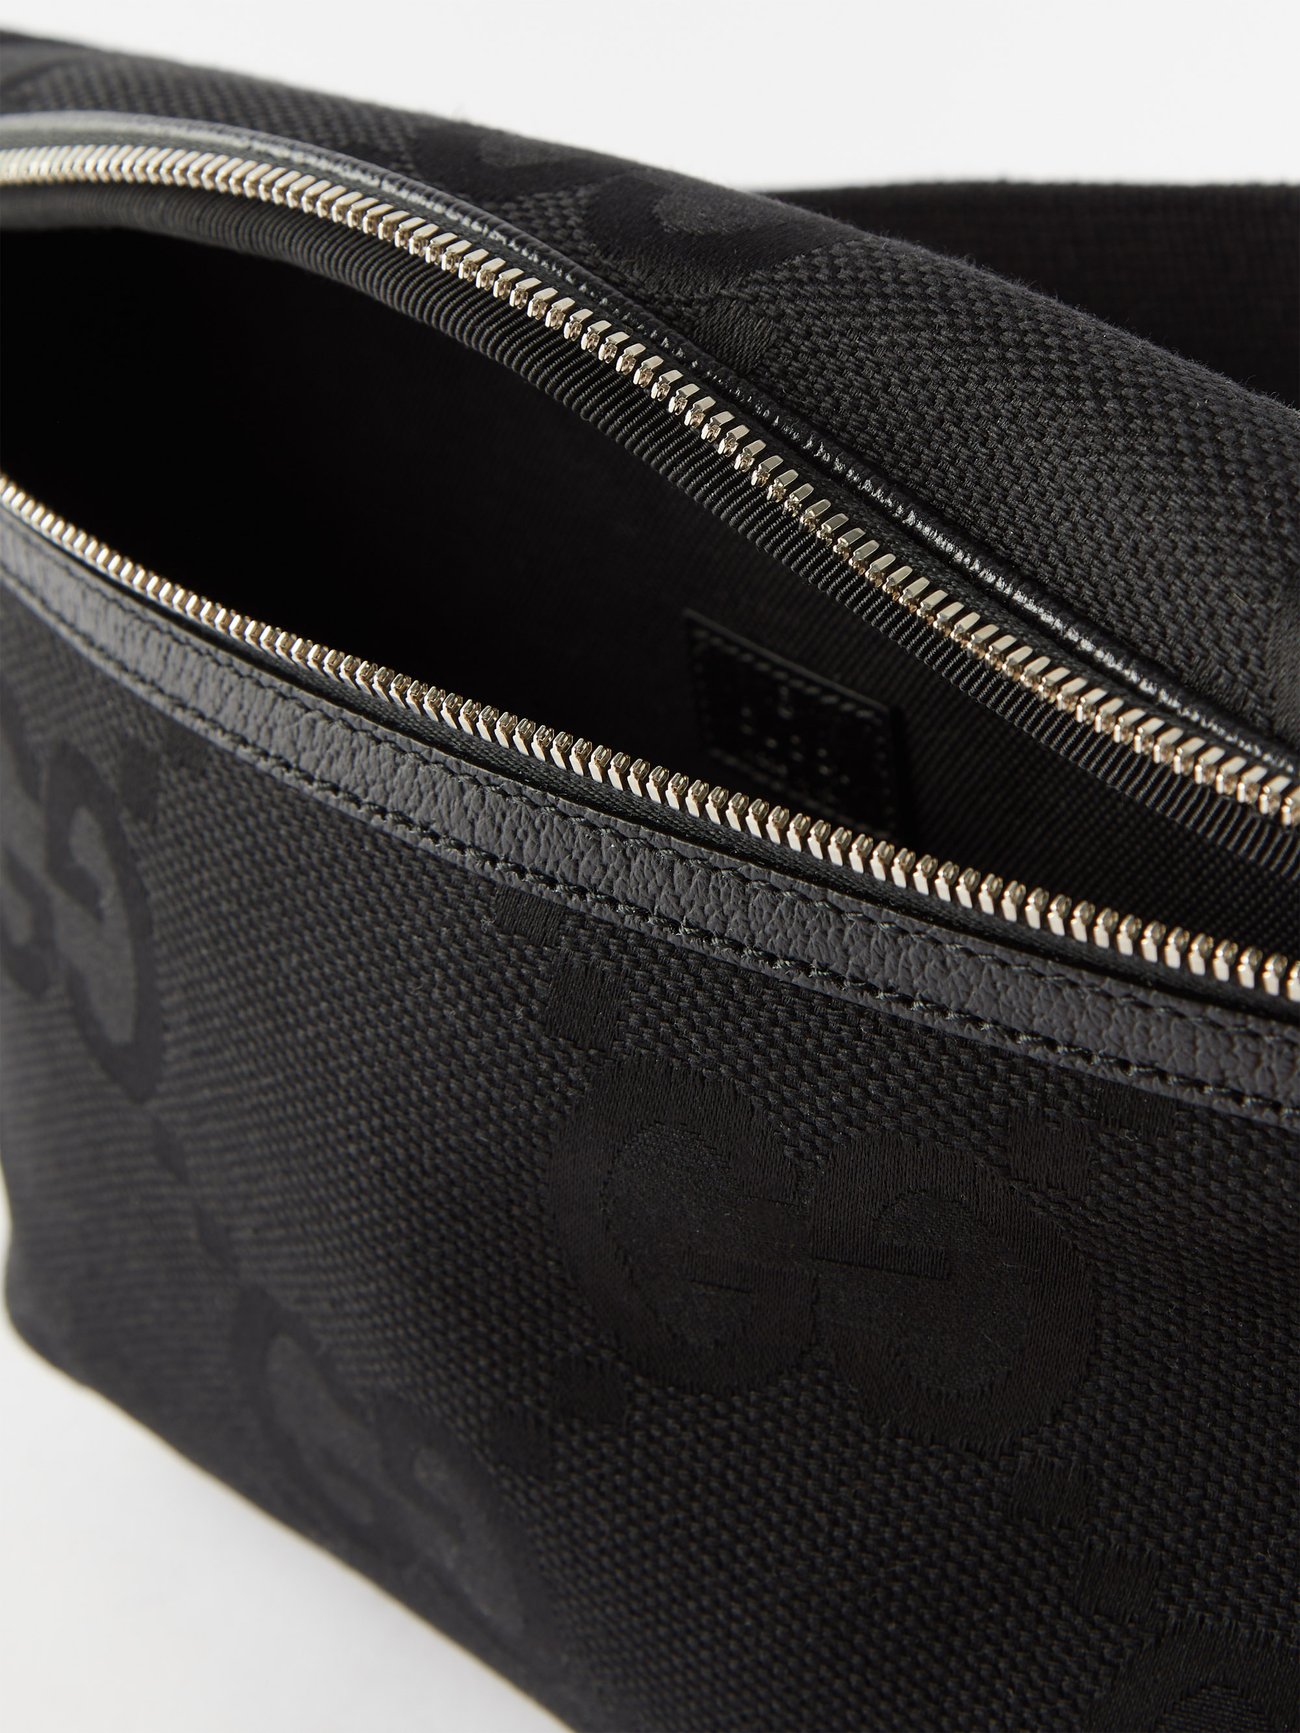 Jumbo GG belt bag in black GG canvas